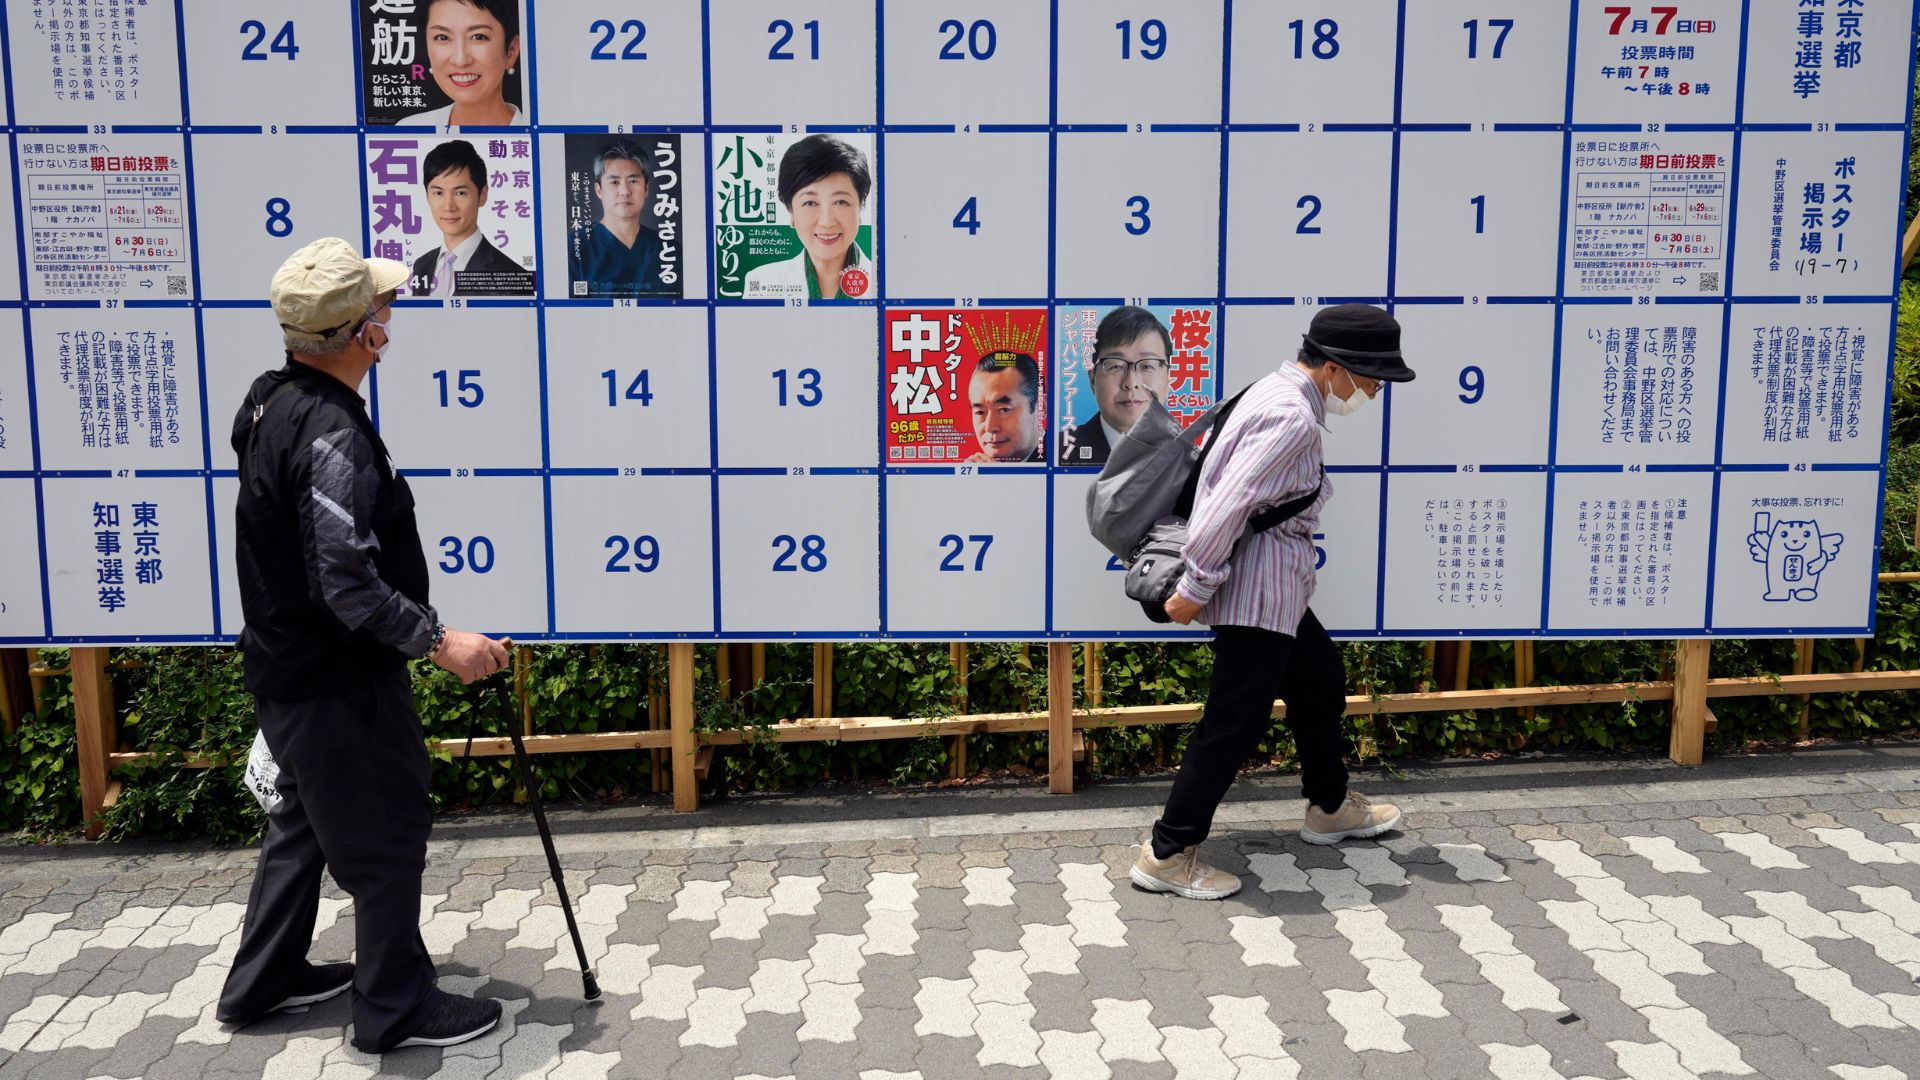 elezione giappone tokyo